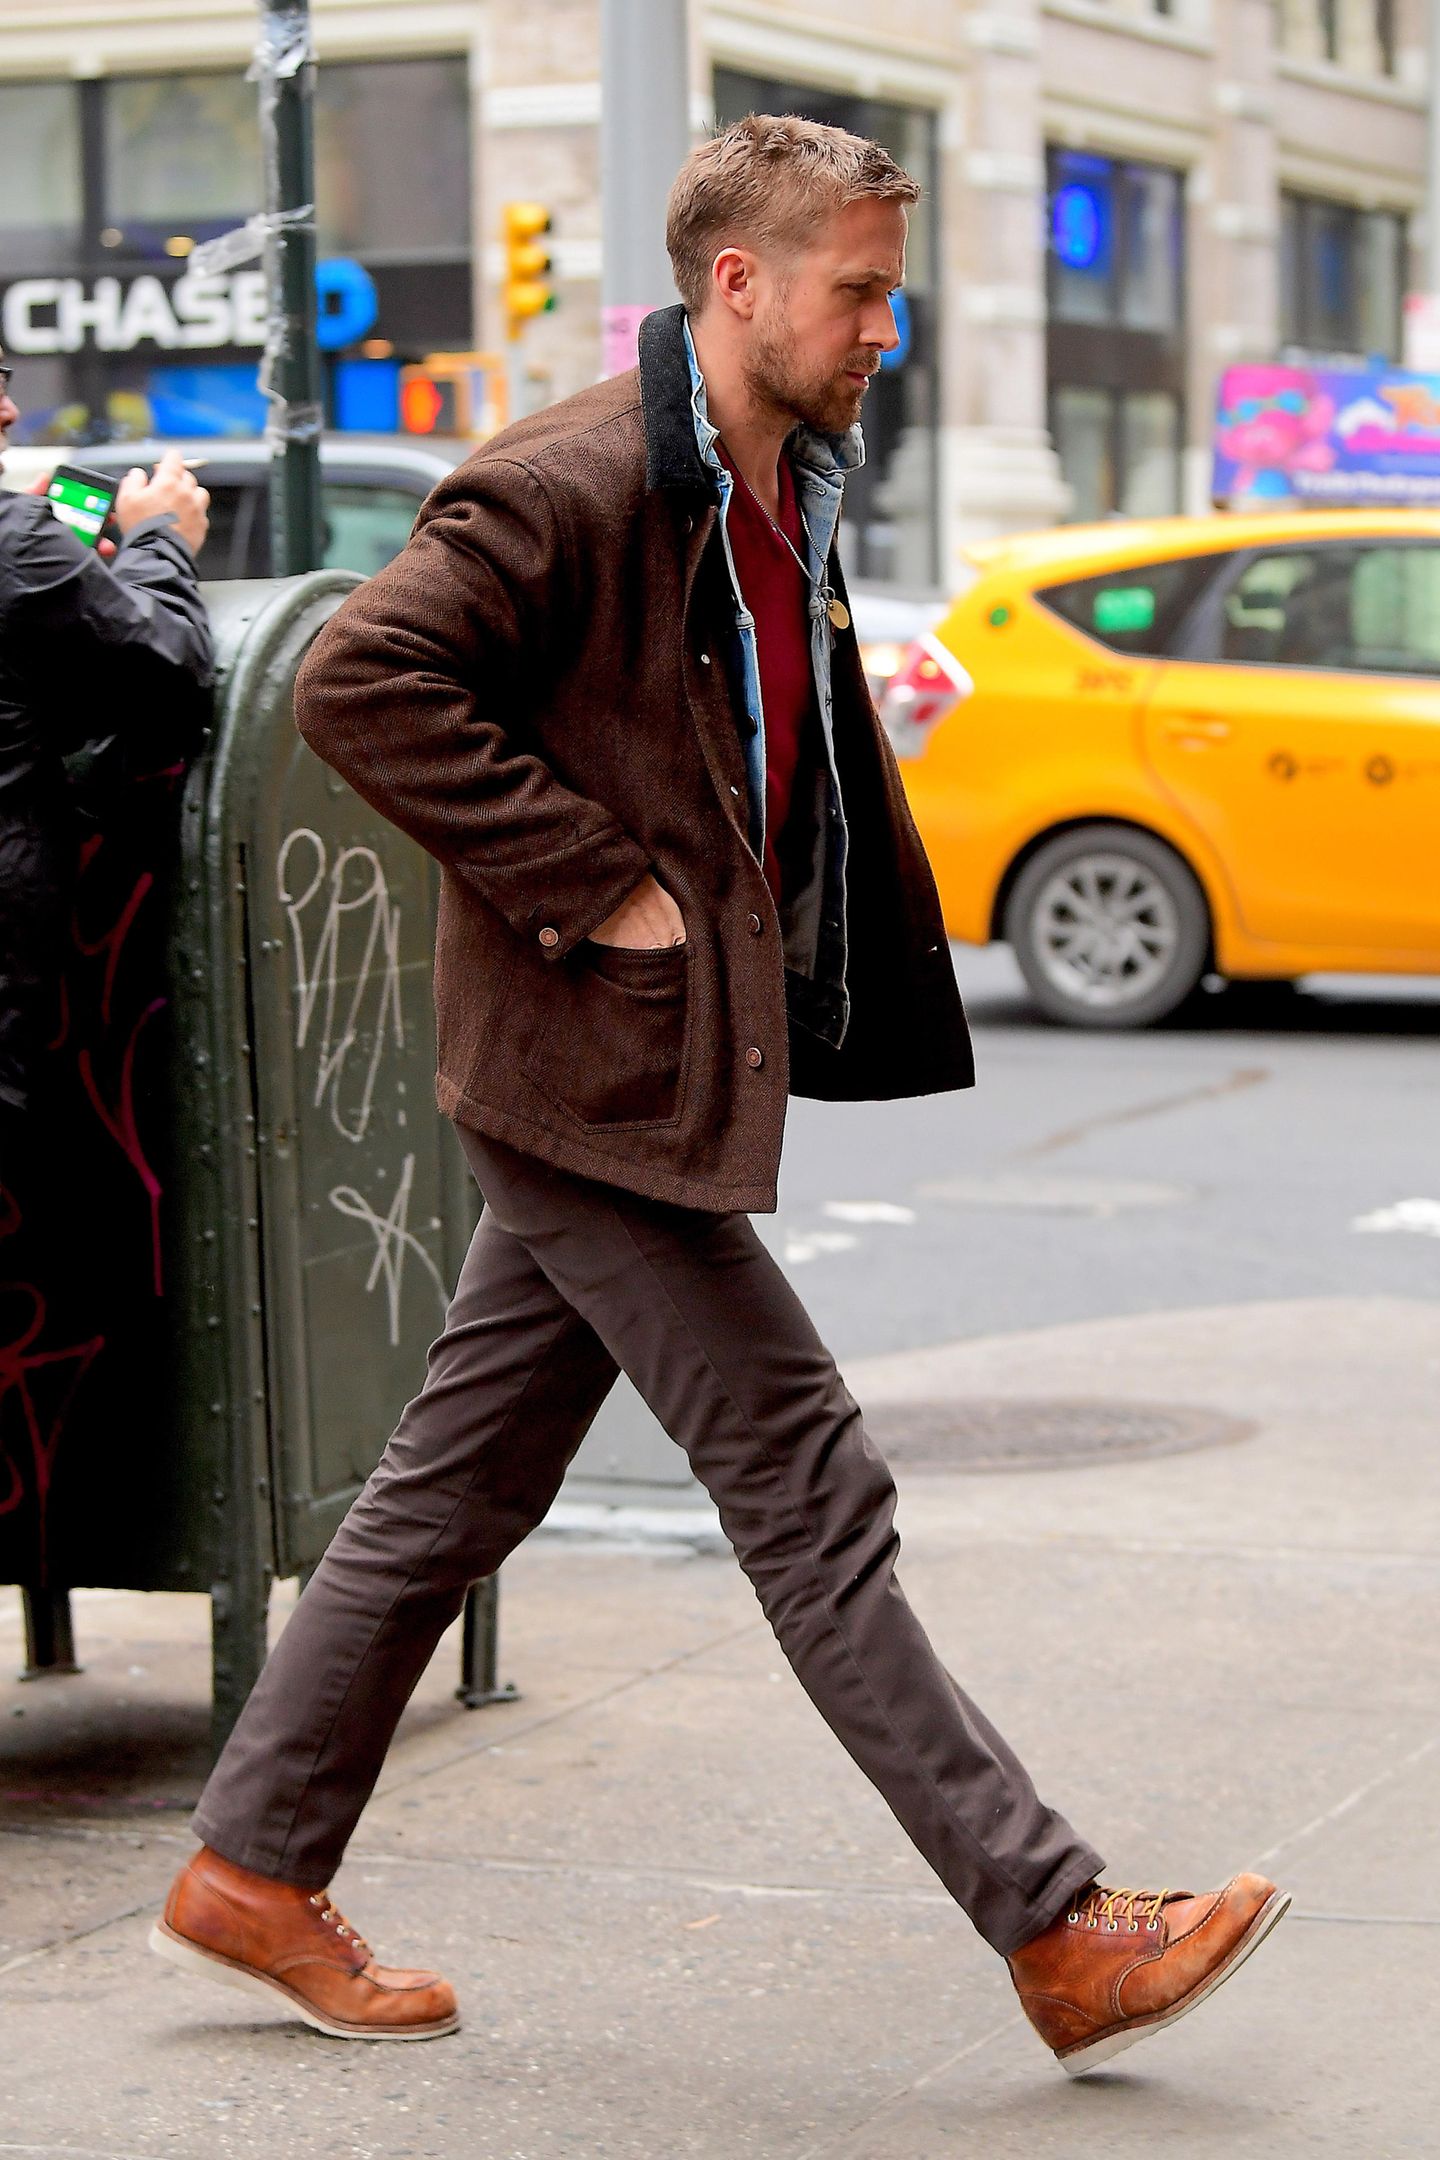 14. Dezember 2018  Kreisch! Ist das etwa Ryan Gosling? Allerdings, aber so schnell, wie er auf dem Weg zu einer Autogrammstunde in New York vor den Kameralinsen der Paparazzi aufgetaucht ist, ist der Schauspieler auch schon wieder verschwunden. Schade!